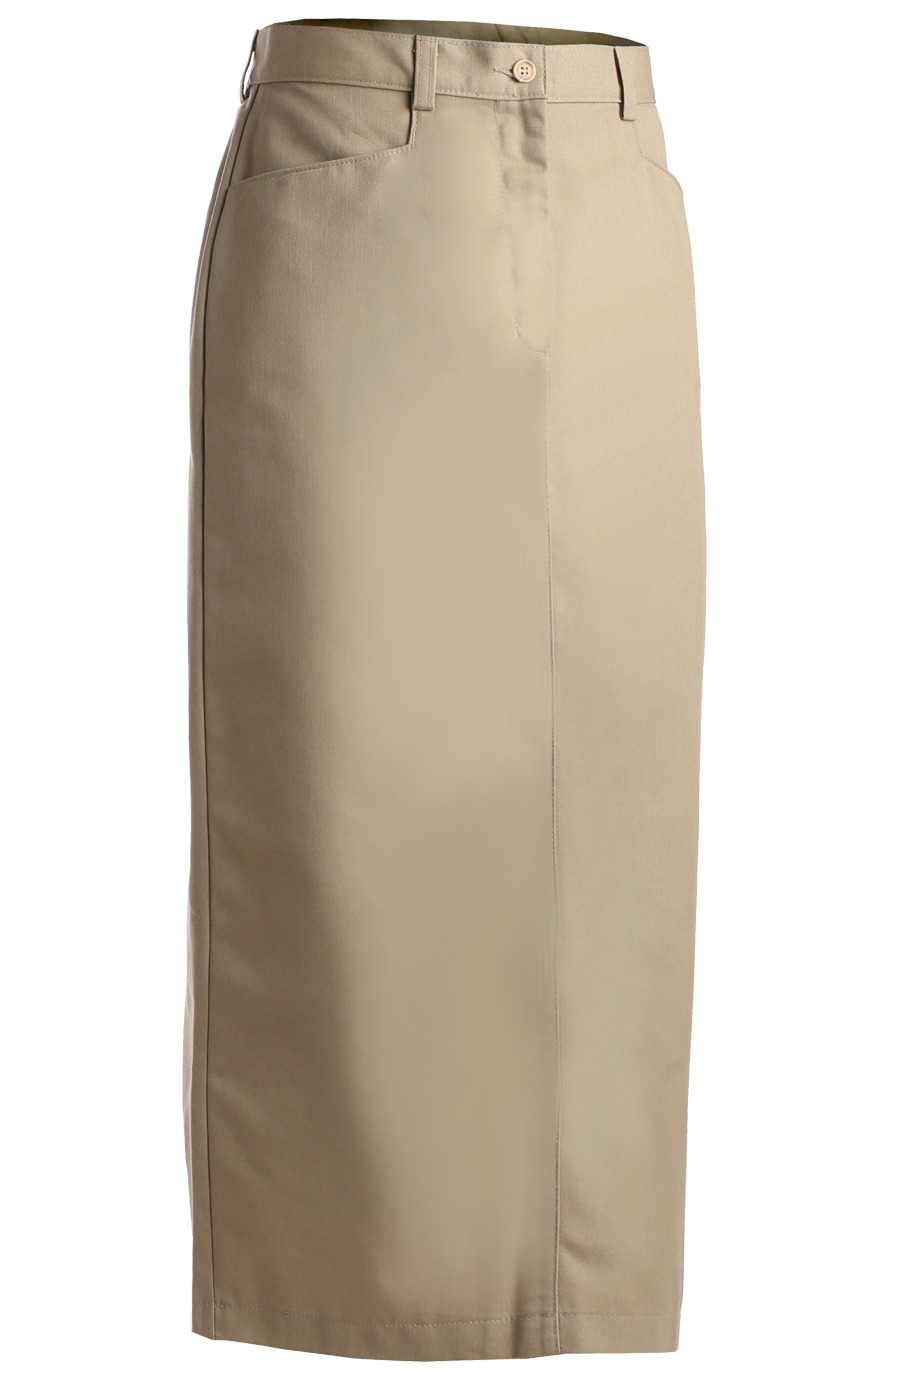 Edwards Garment 9779 - Women's Chino Skirt $36.00 - Skirts